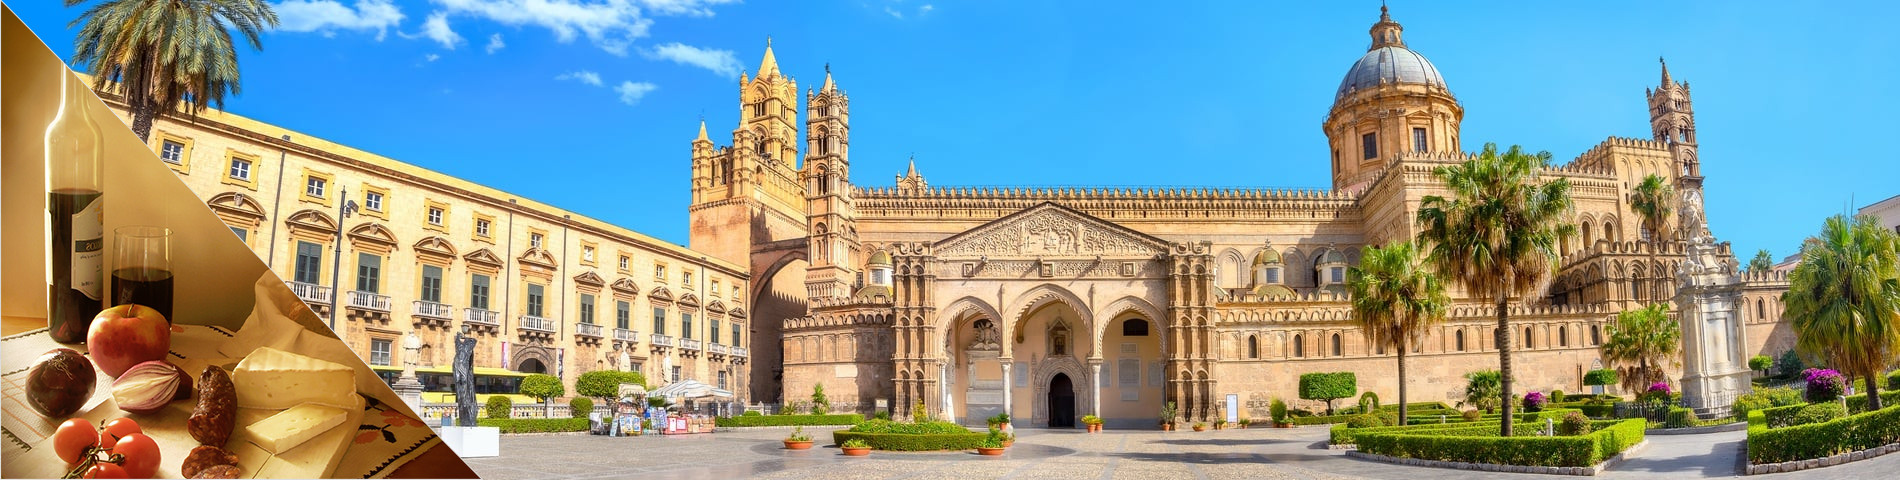 Palermo - Italian & Culture